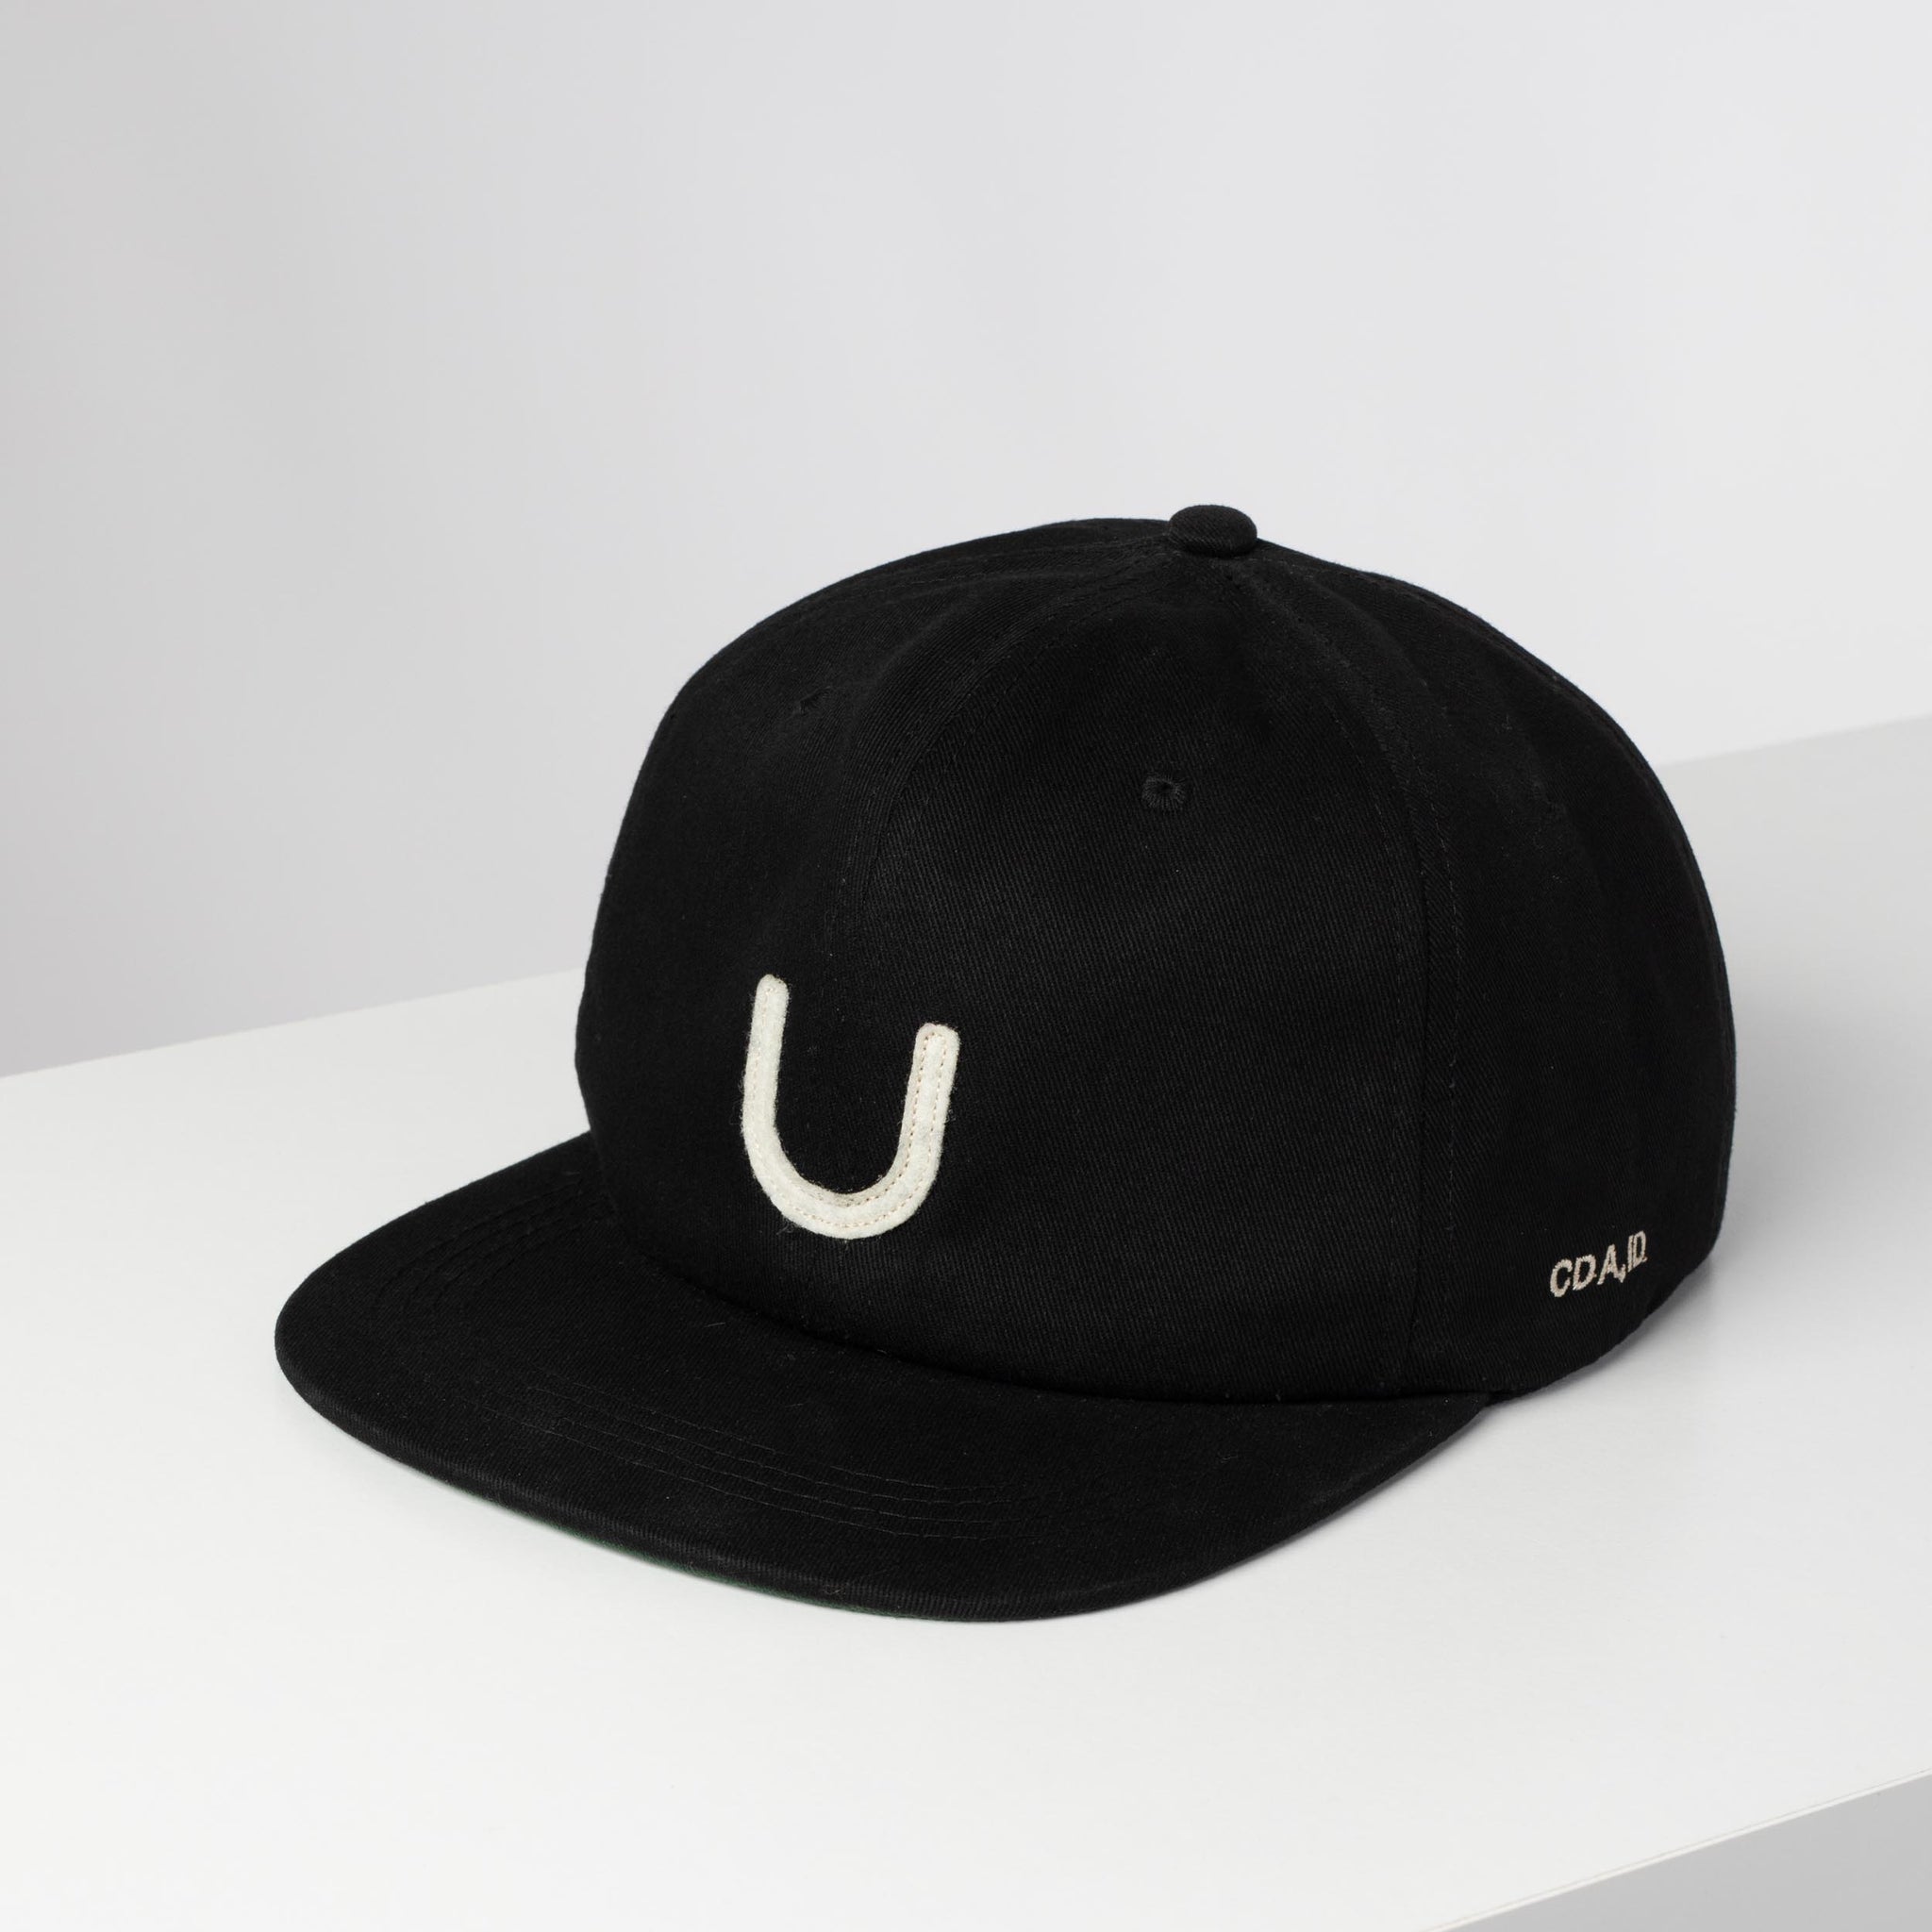 U Hat